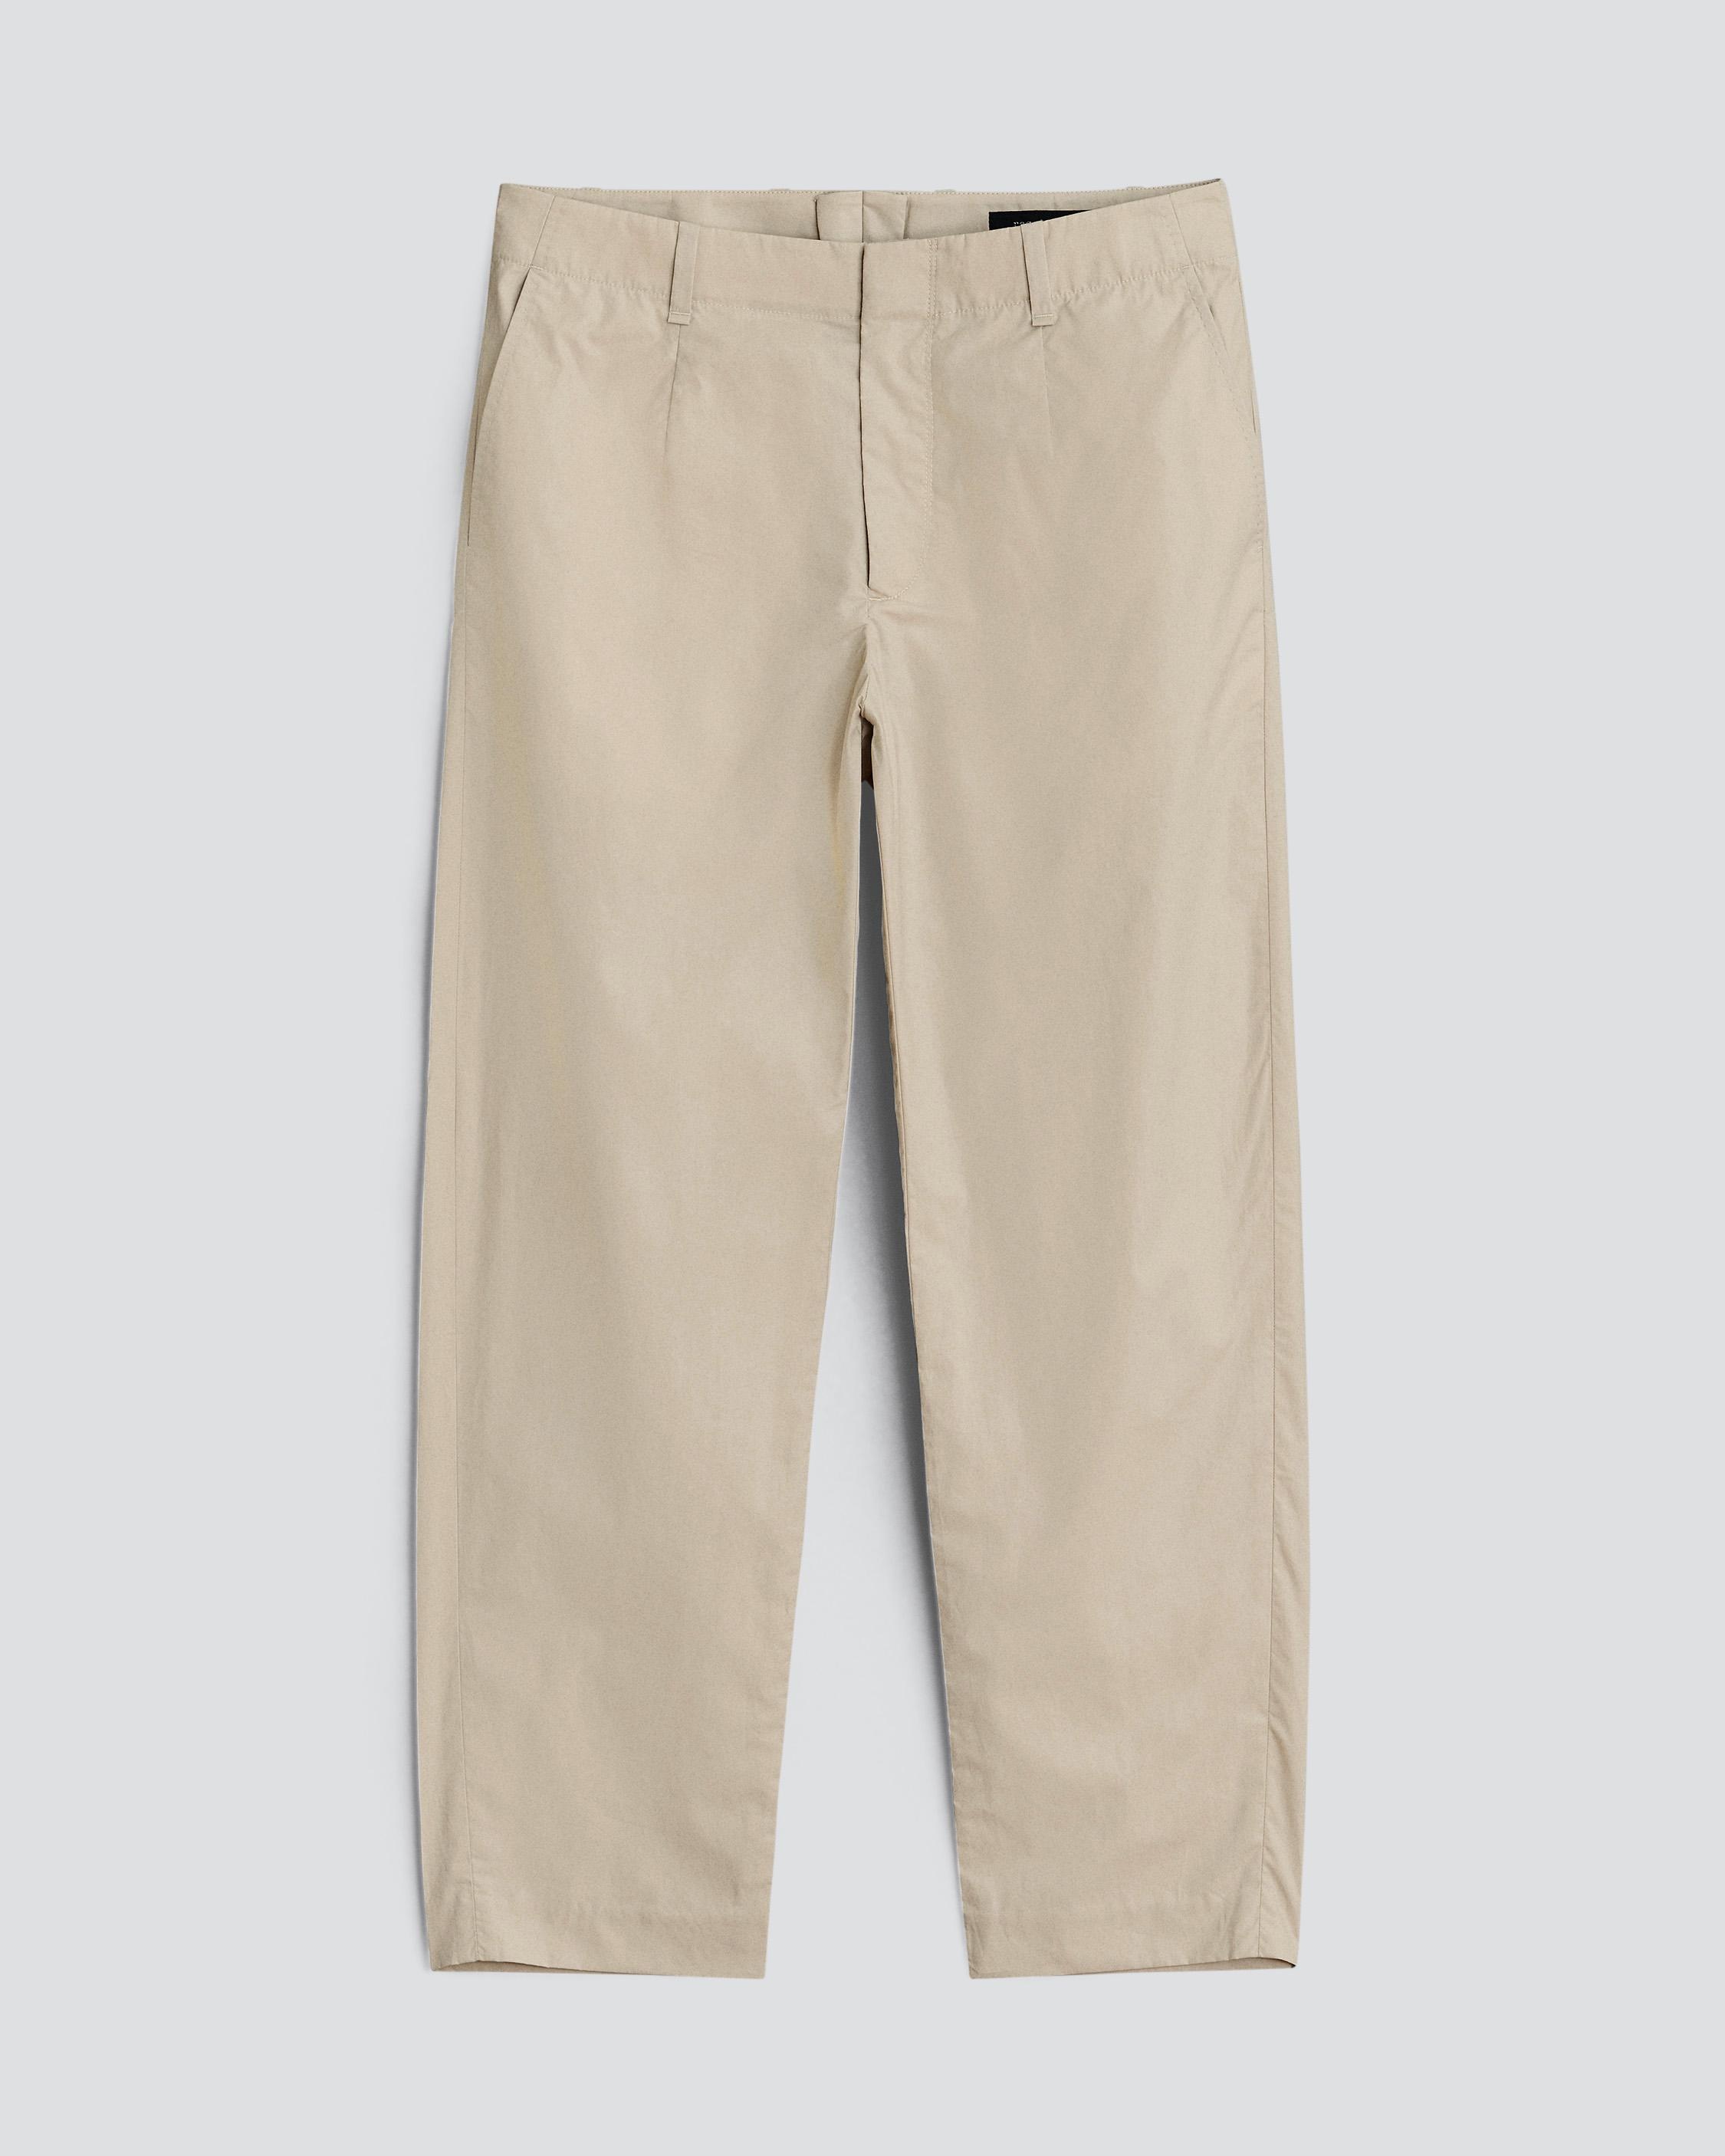 Shift Paper Cotton Trouser
Slim Fit Pant - 1